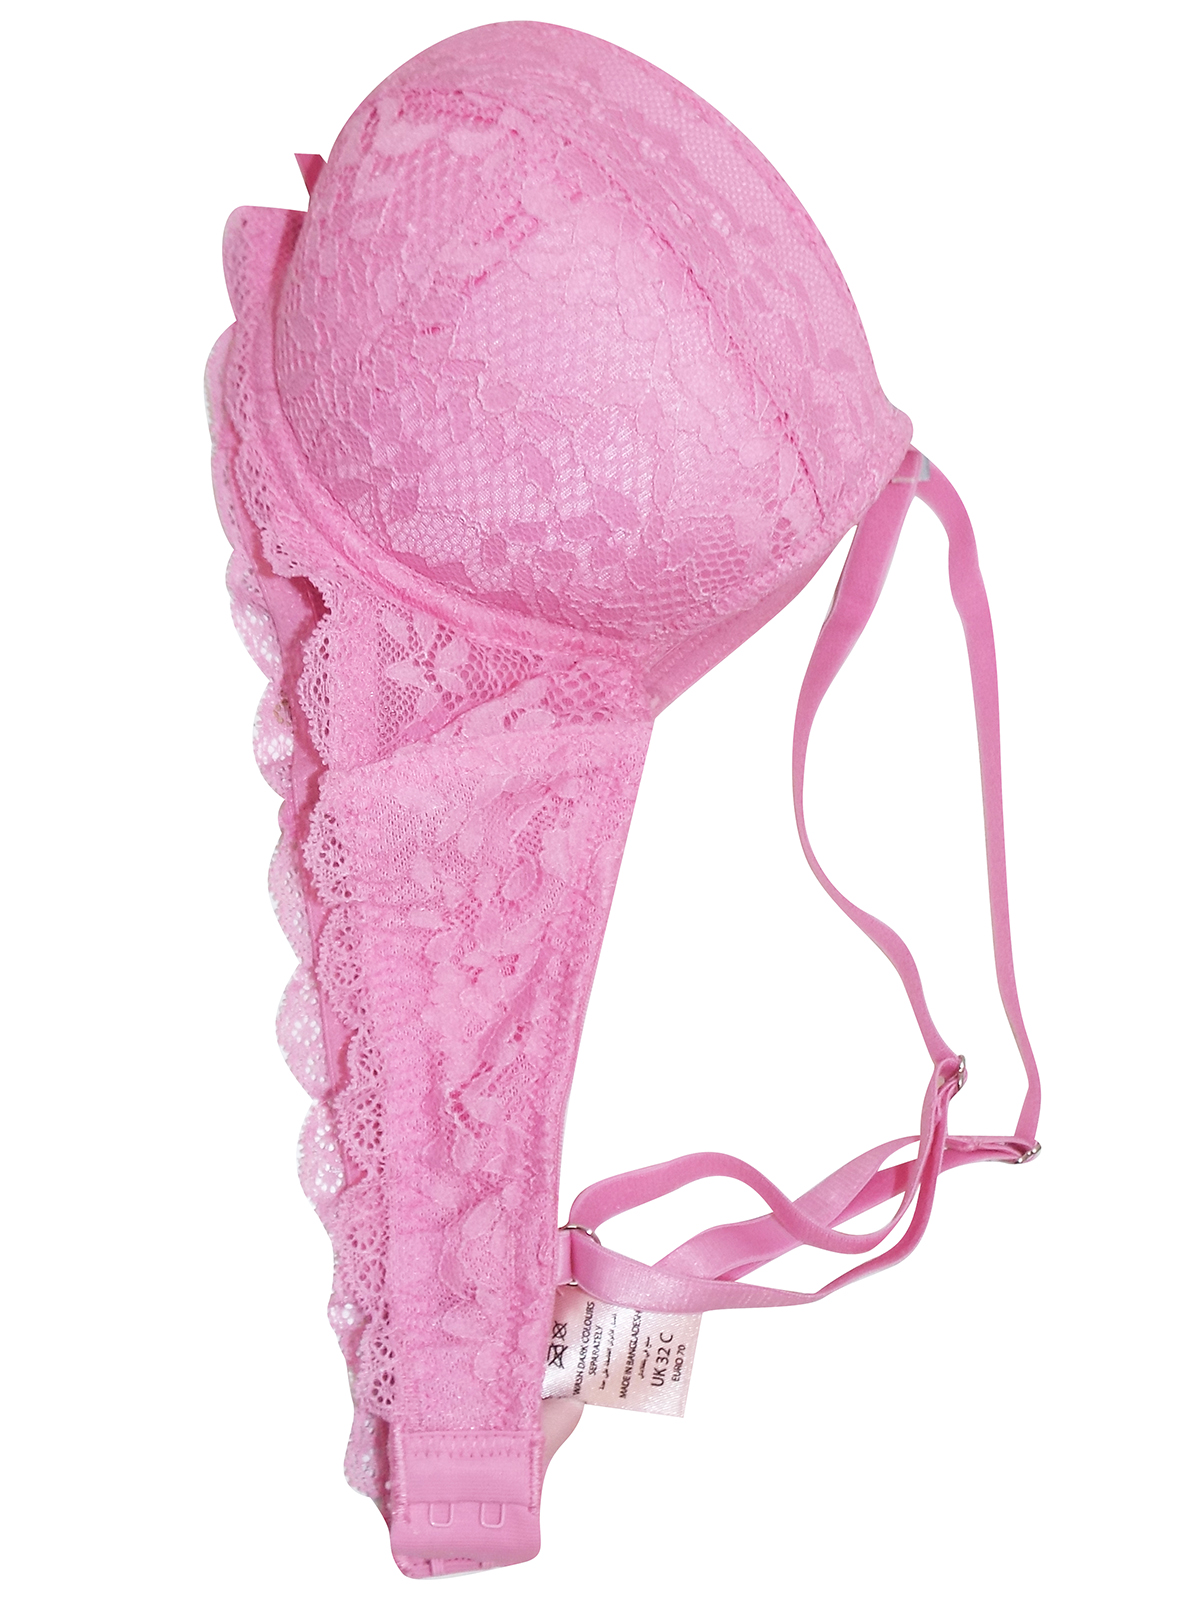 Boux Avenue Ellsie high apex plunge bra - Pink Mix - 34D, £20.00